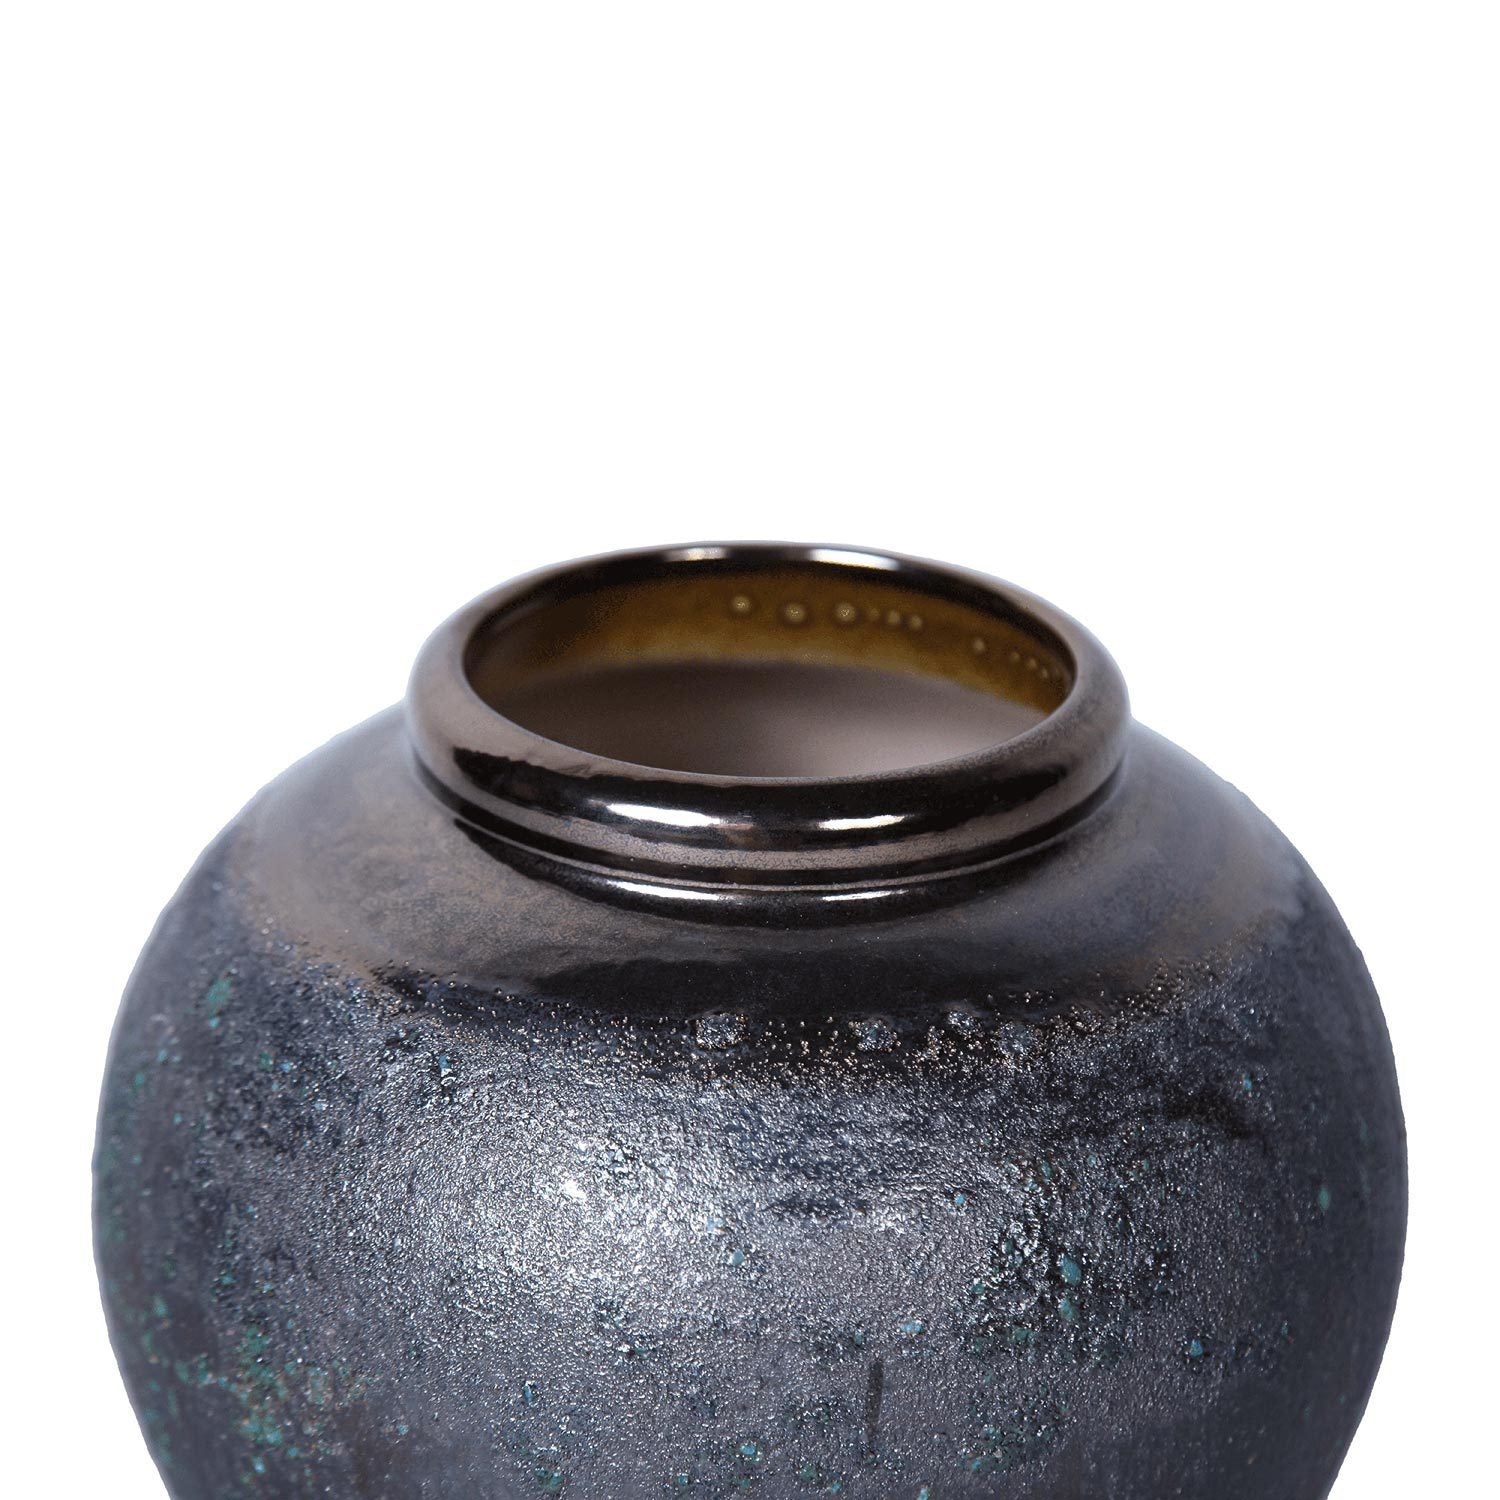 Vintage Smoke Ceramic Vase 8.7"D x 8.7"H Artisanal smoke-ceramic